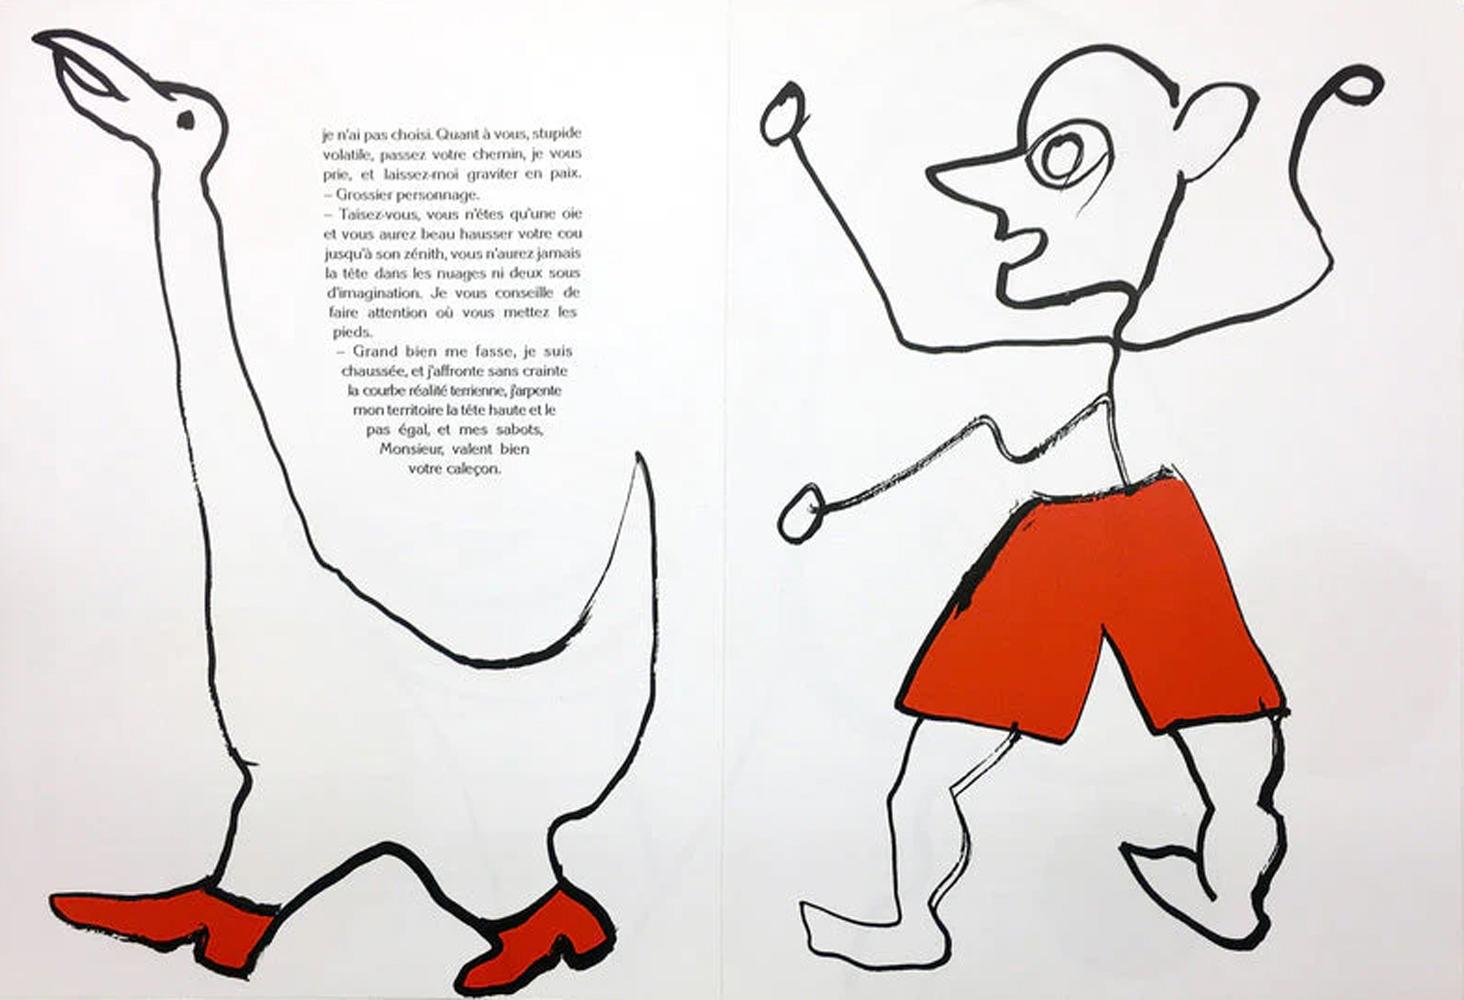 Alexander Calder Print – Derriere le Miroir #221, Derriere